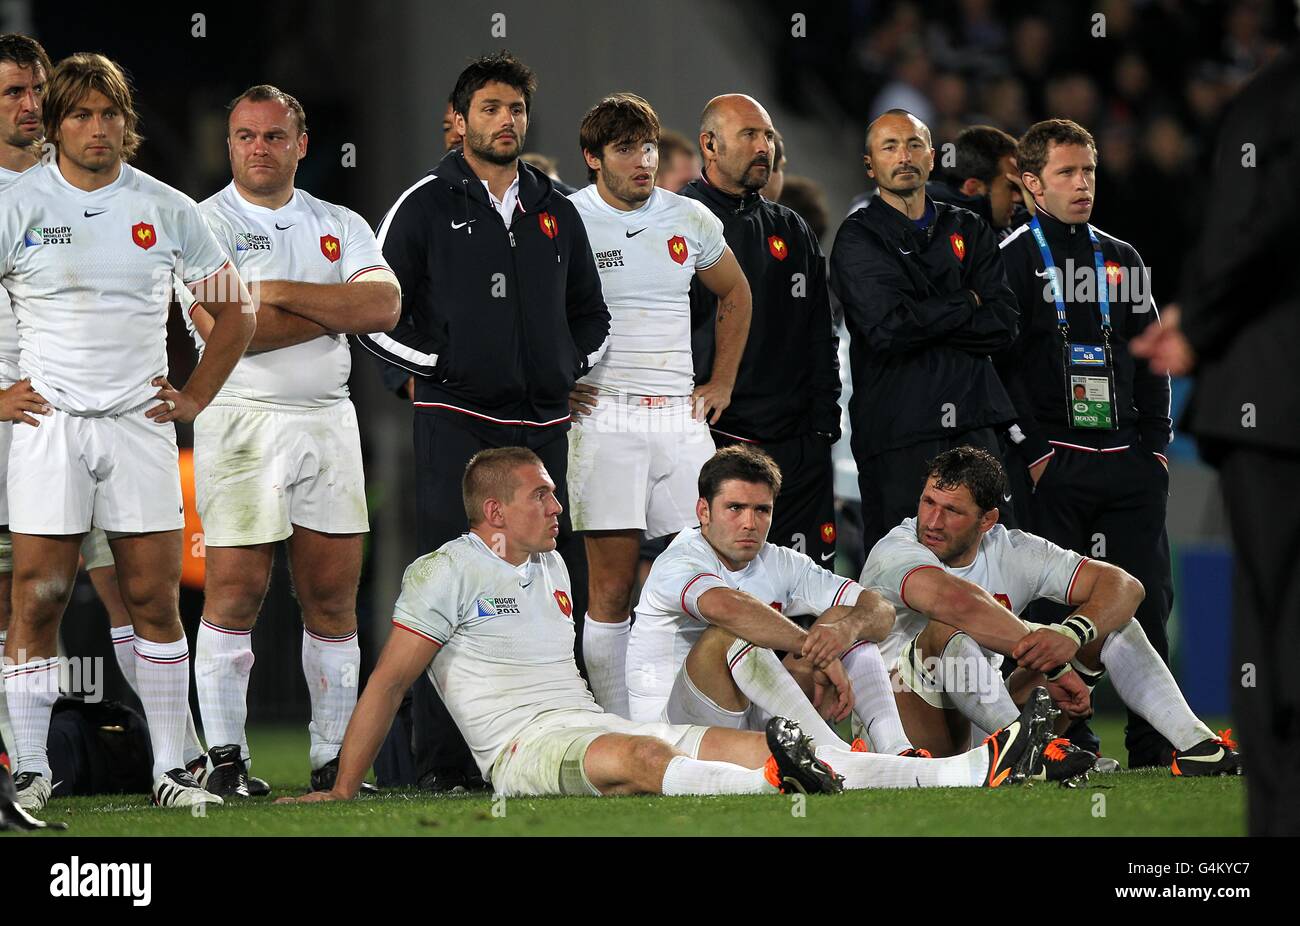 Rugby Union - Coppa del mondo di Rugby 2011 - finale - Francia / Nuova  Zelanda - Eden Park. I giocatori francesi si levano in piedi e siedono  abbattuti sul campo dopo la partita Foto stock - Alamy